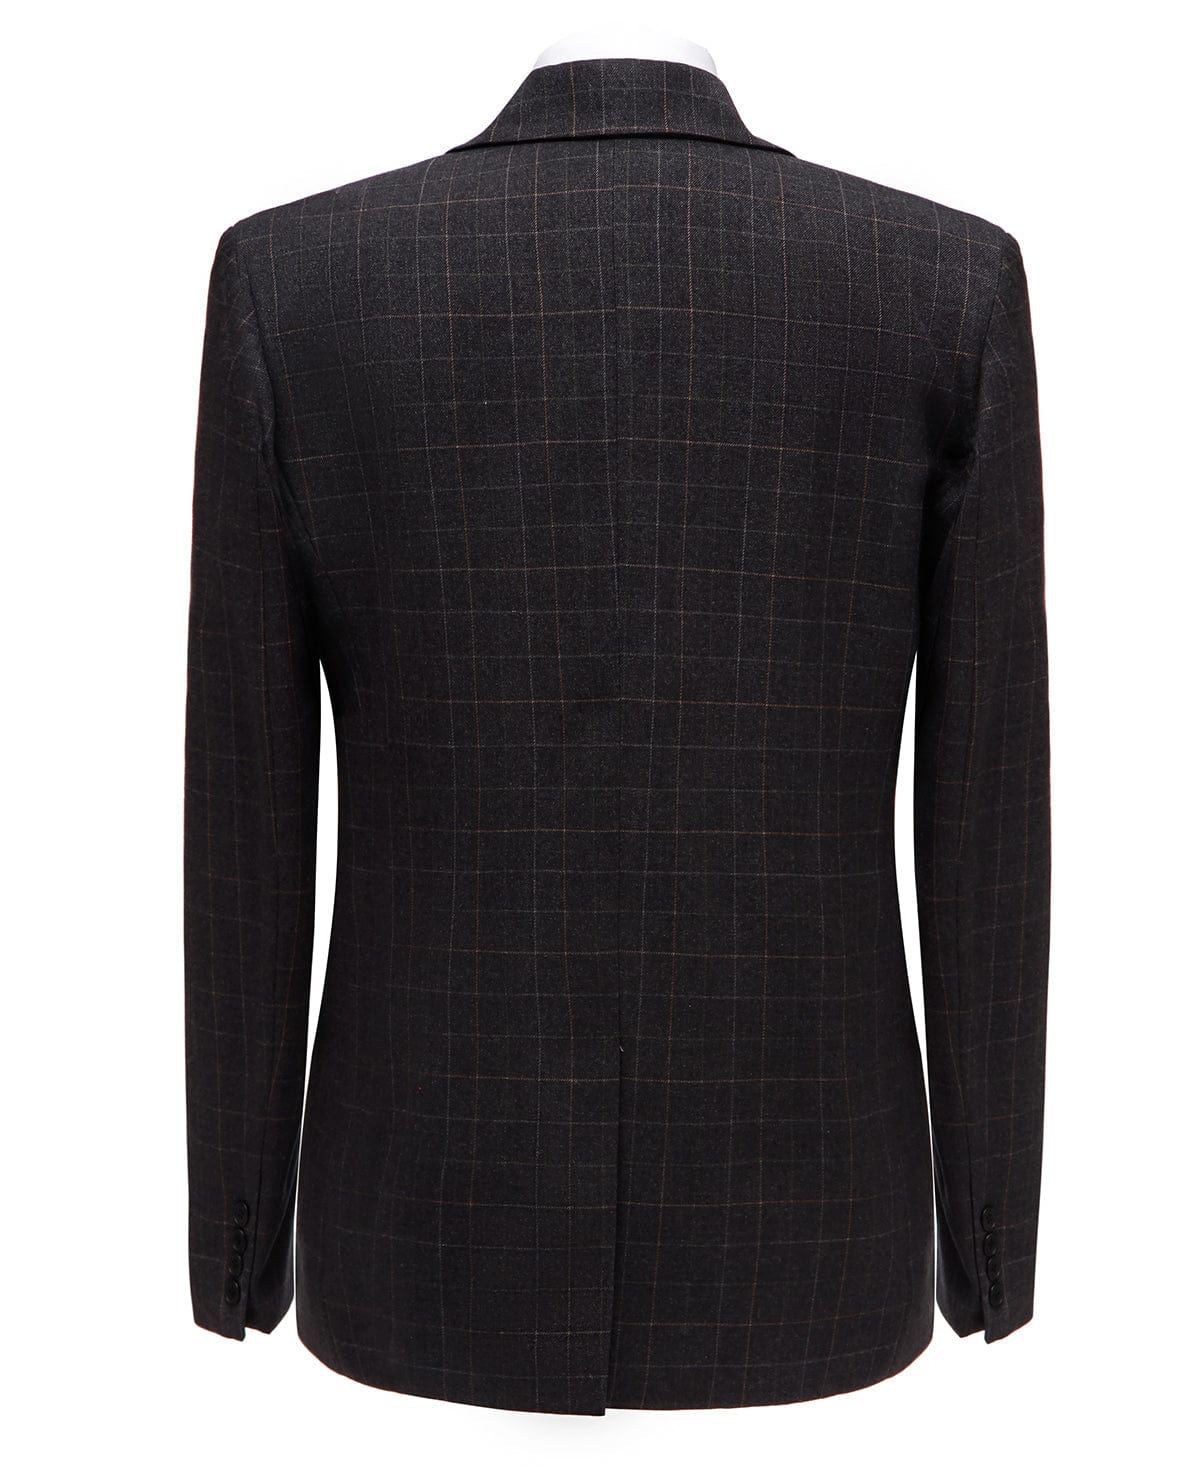 ceehuteey Formal Plaid 3 Pieces Mens Notch Lapel Suit Tuxedos (Blazer+vest+Pants)